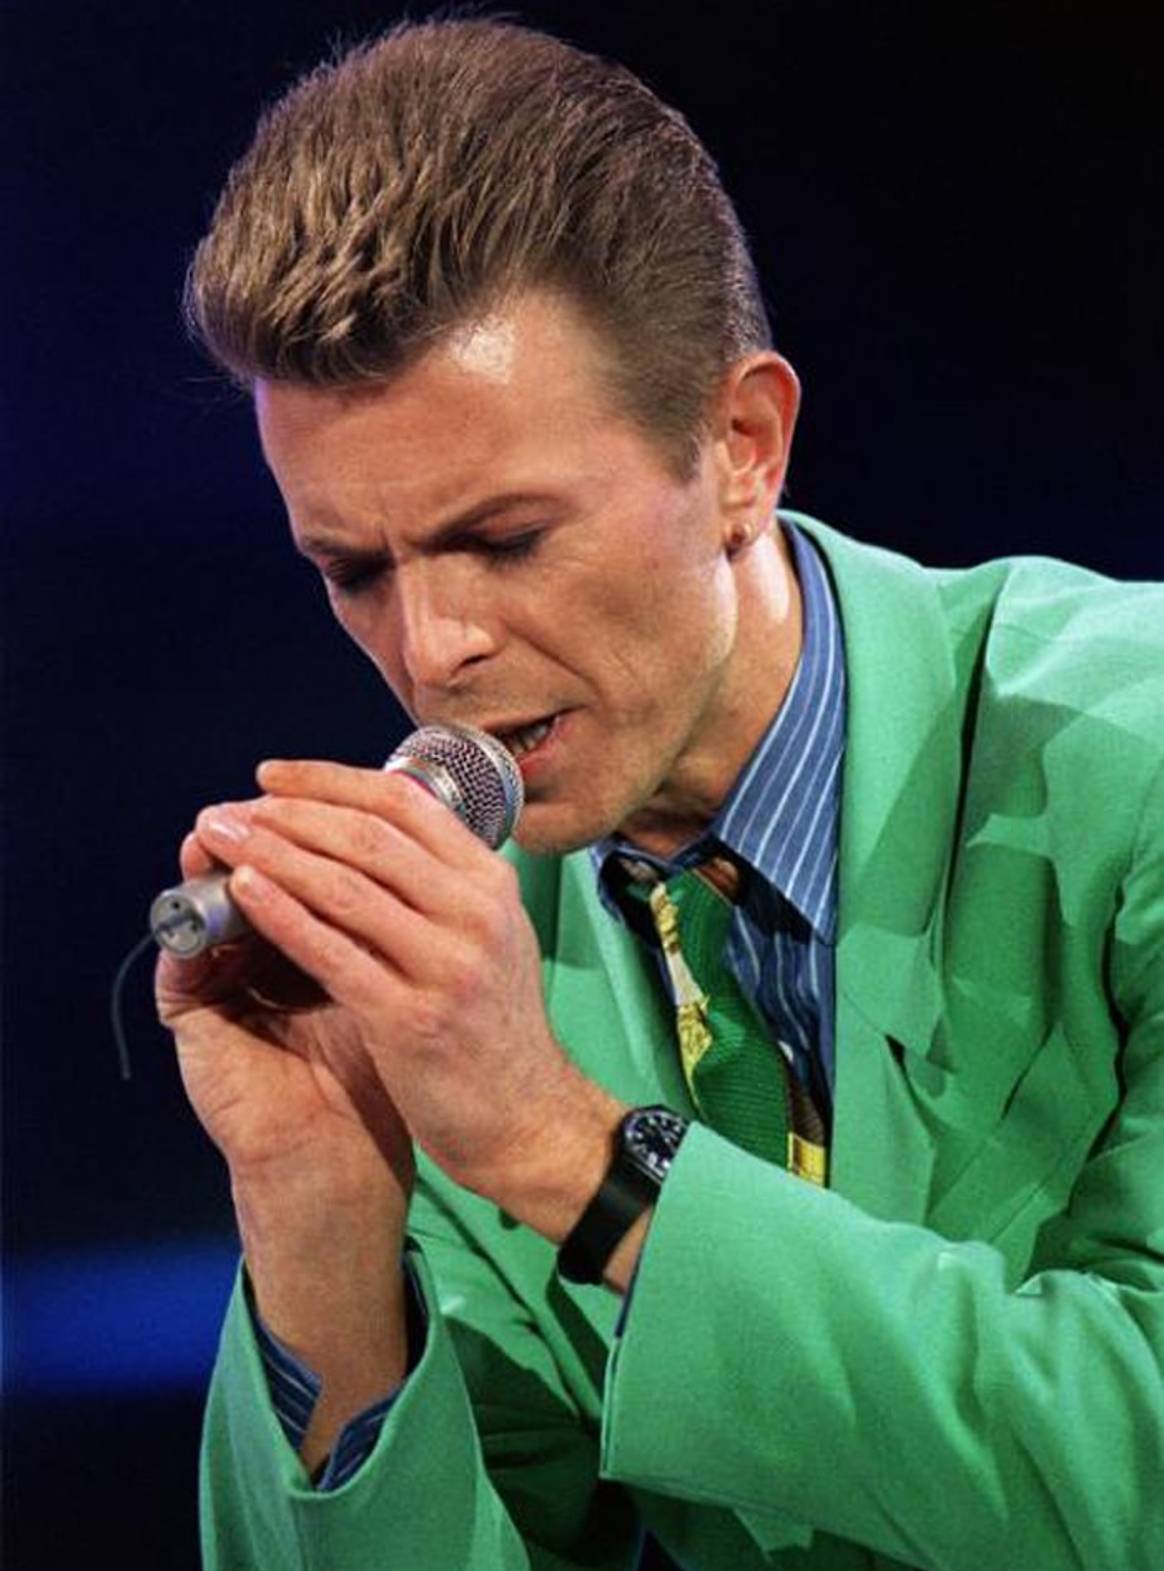 Music legend David Bowie dies aged 69